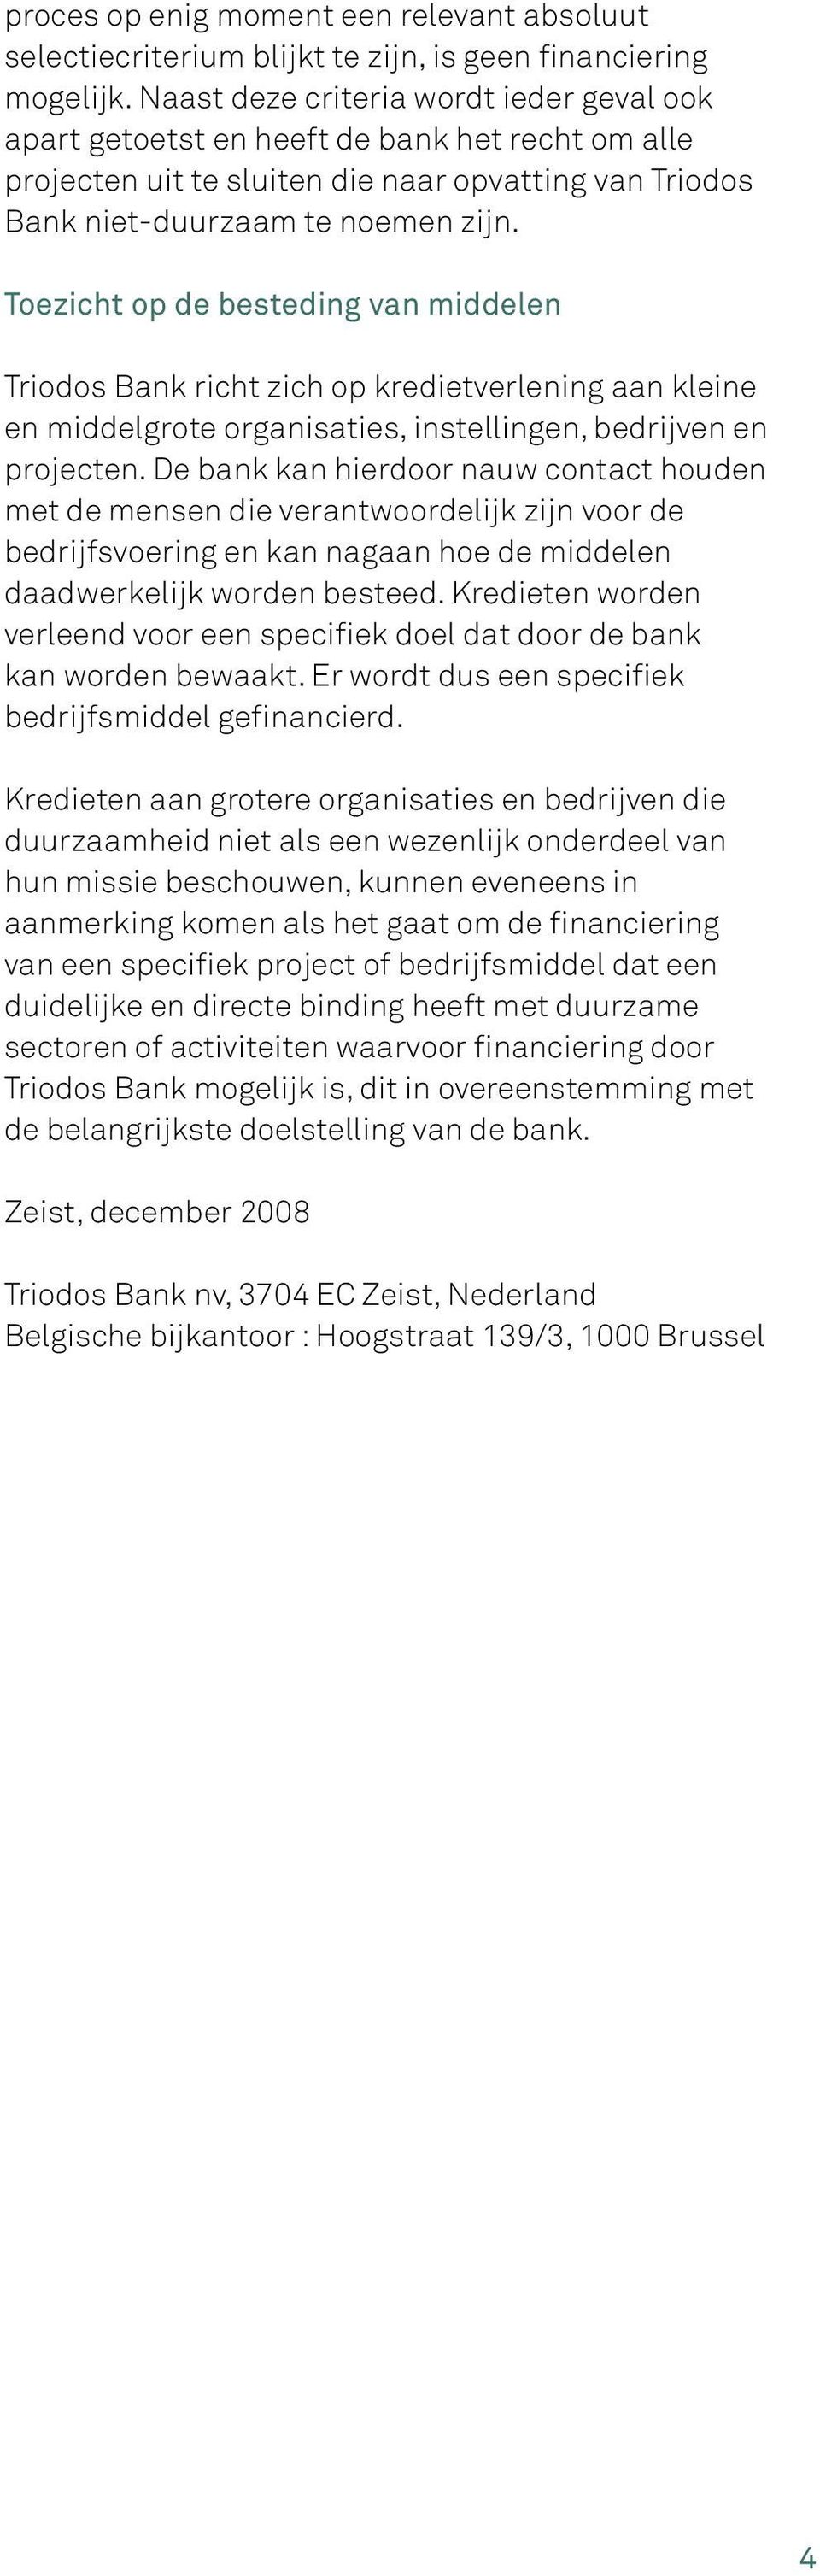 Toezicht op de besteding van middelen Triodos Bank richt zich op kredietverlening aan kleine en middelgrote organisaties, instellingen, bedrijven en projecten.